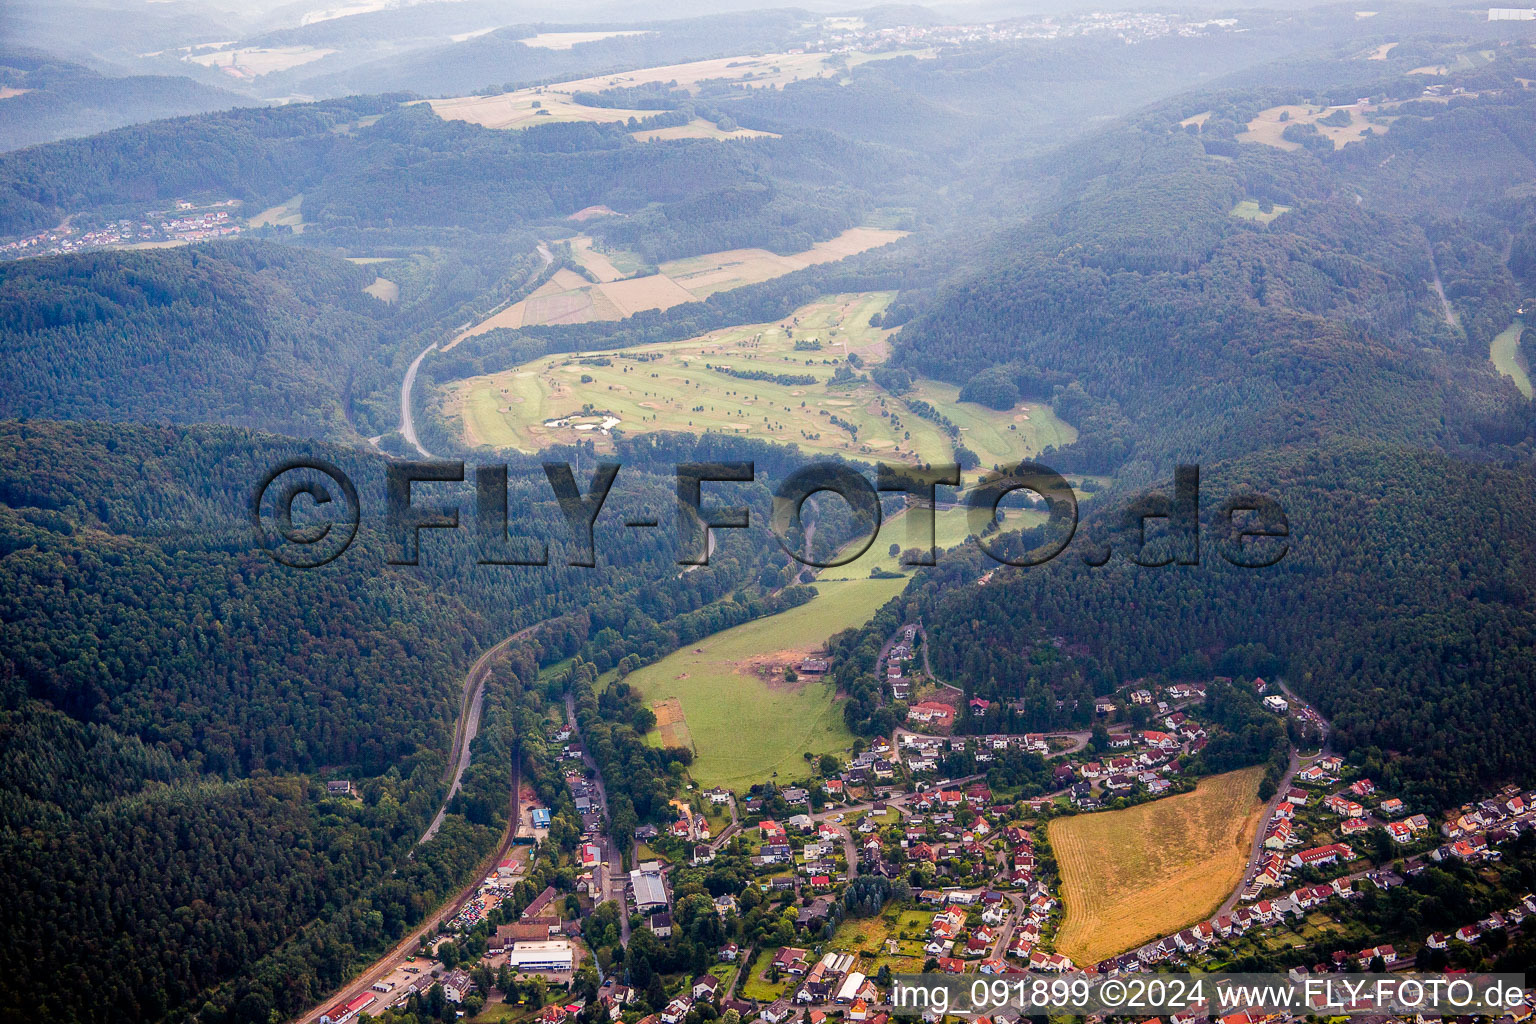 Vue aérienne de Terrain du Golf Club Pfälzerwal à Waldfischbach-Burgalben dans le département Rhénanie-Palatinat, Allemagne